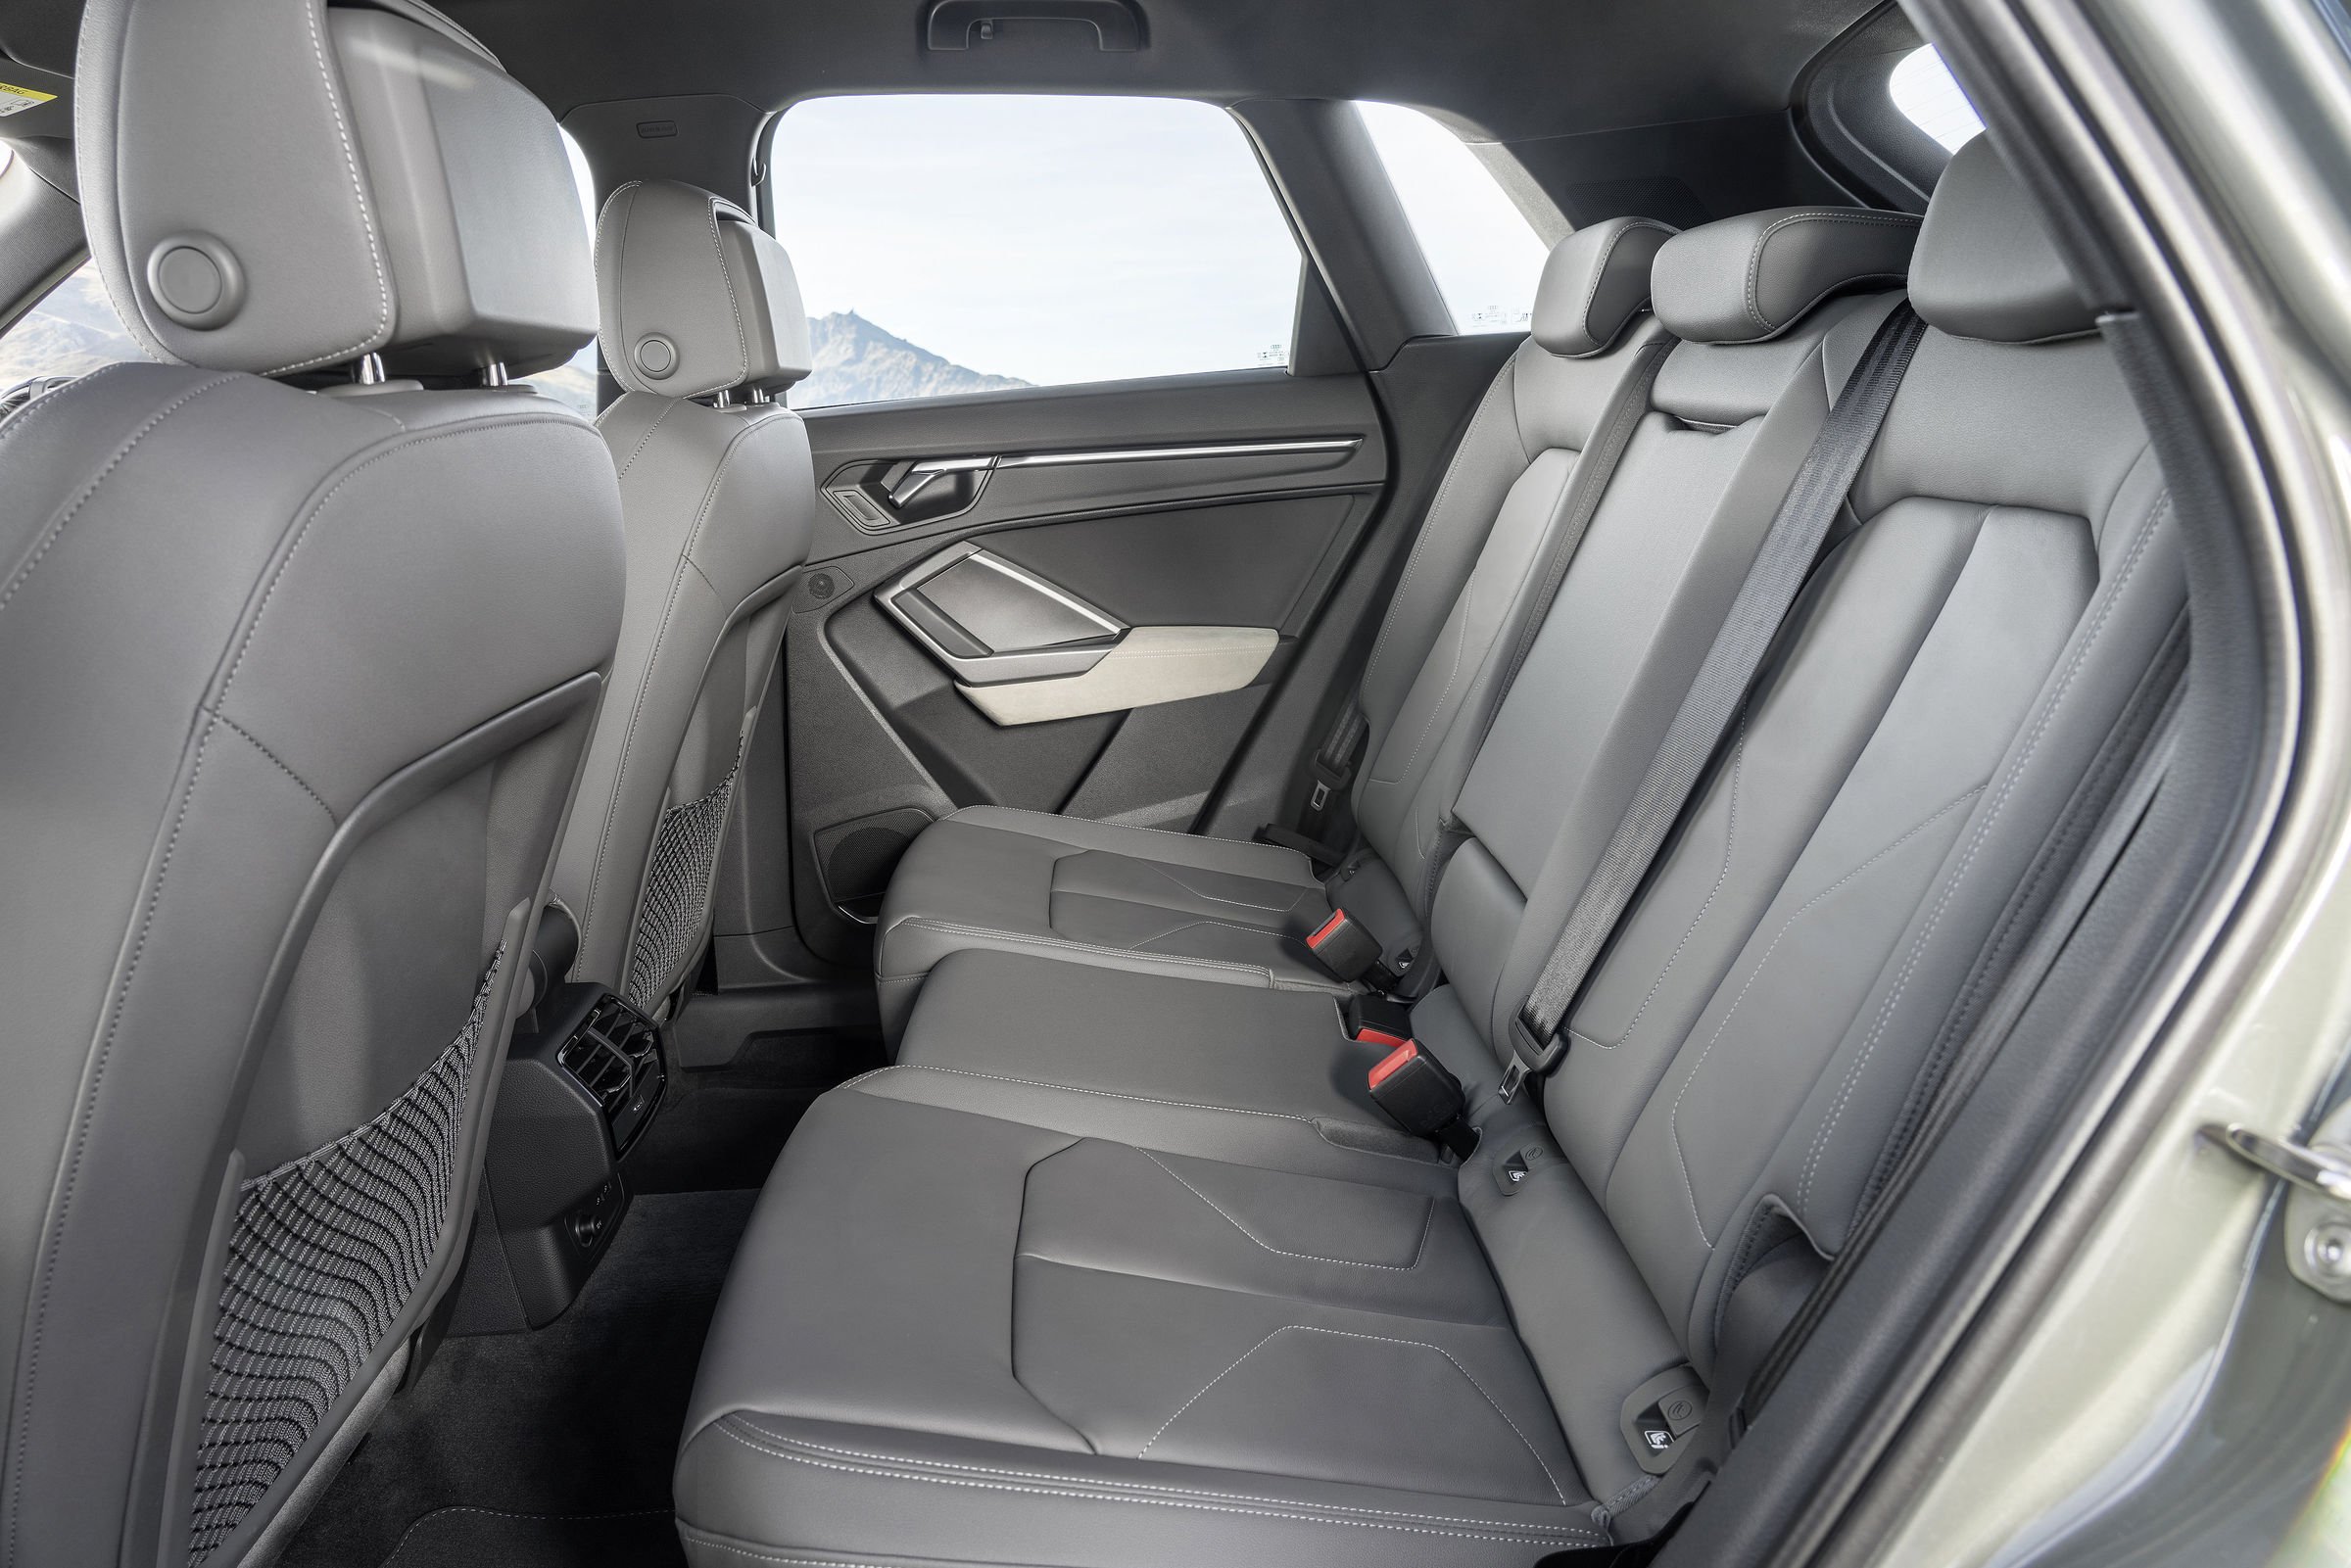 Audi Q3 interior - Rear Seats